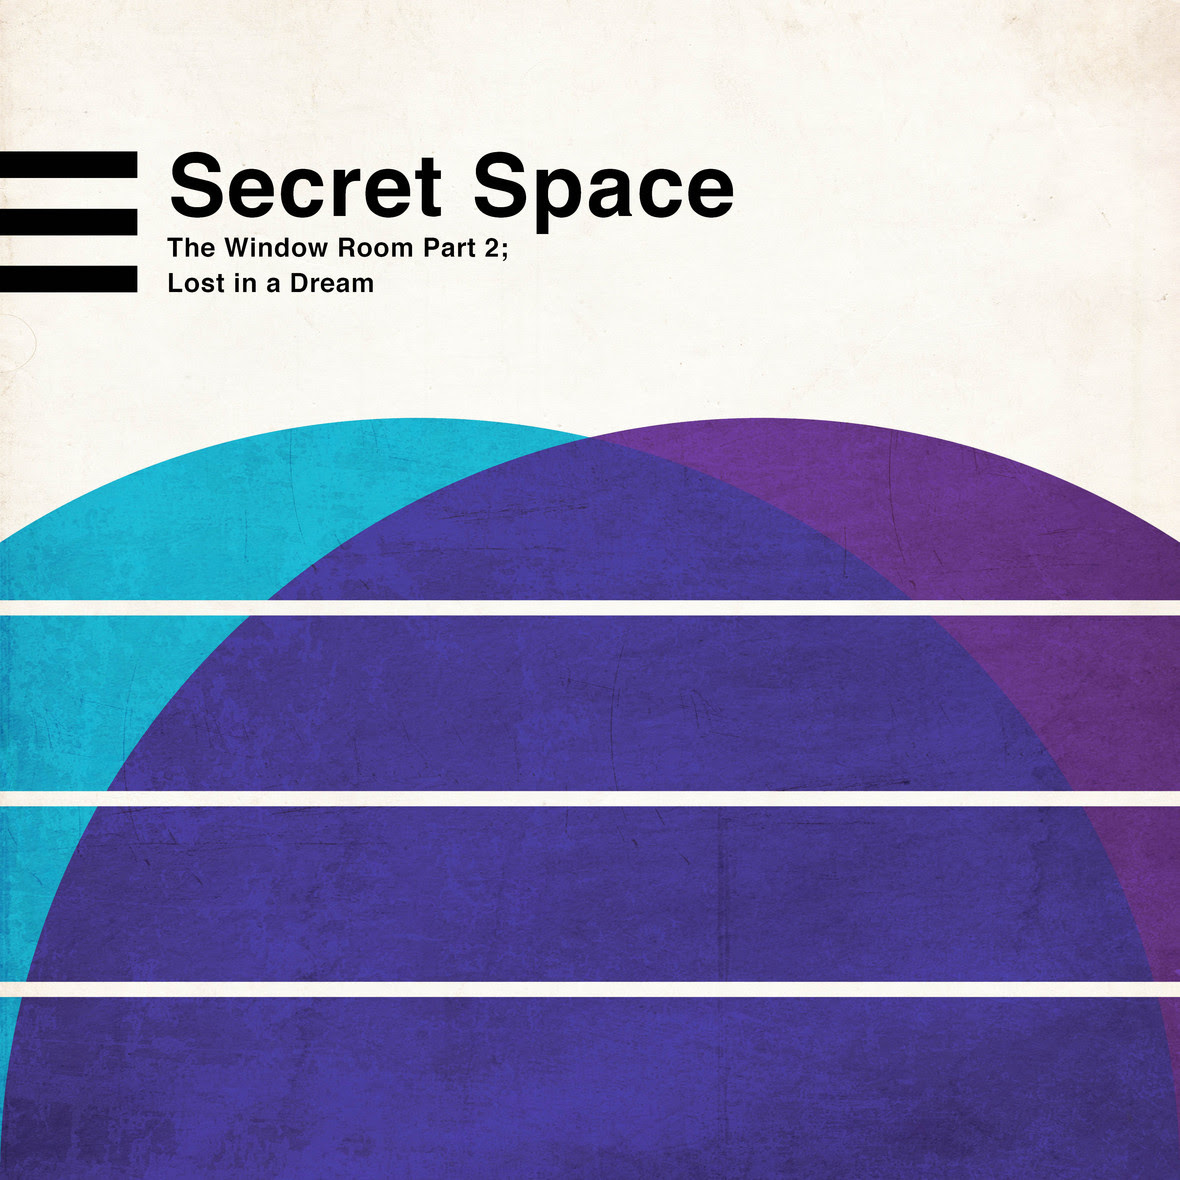 Secret-Space-22-01 1 